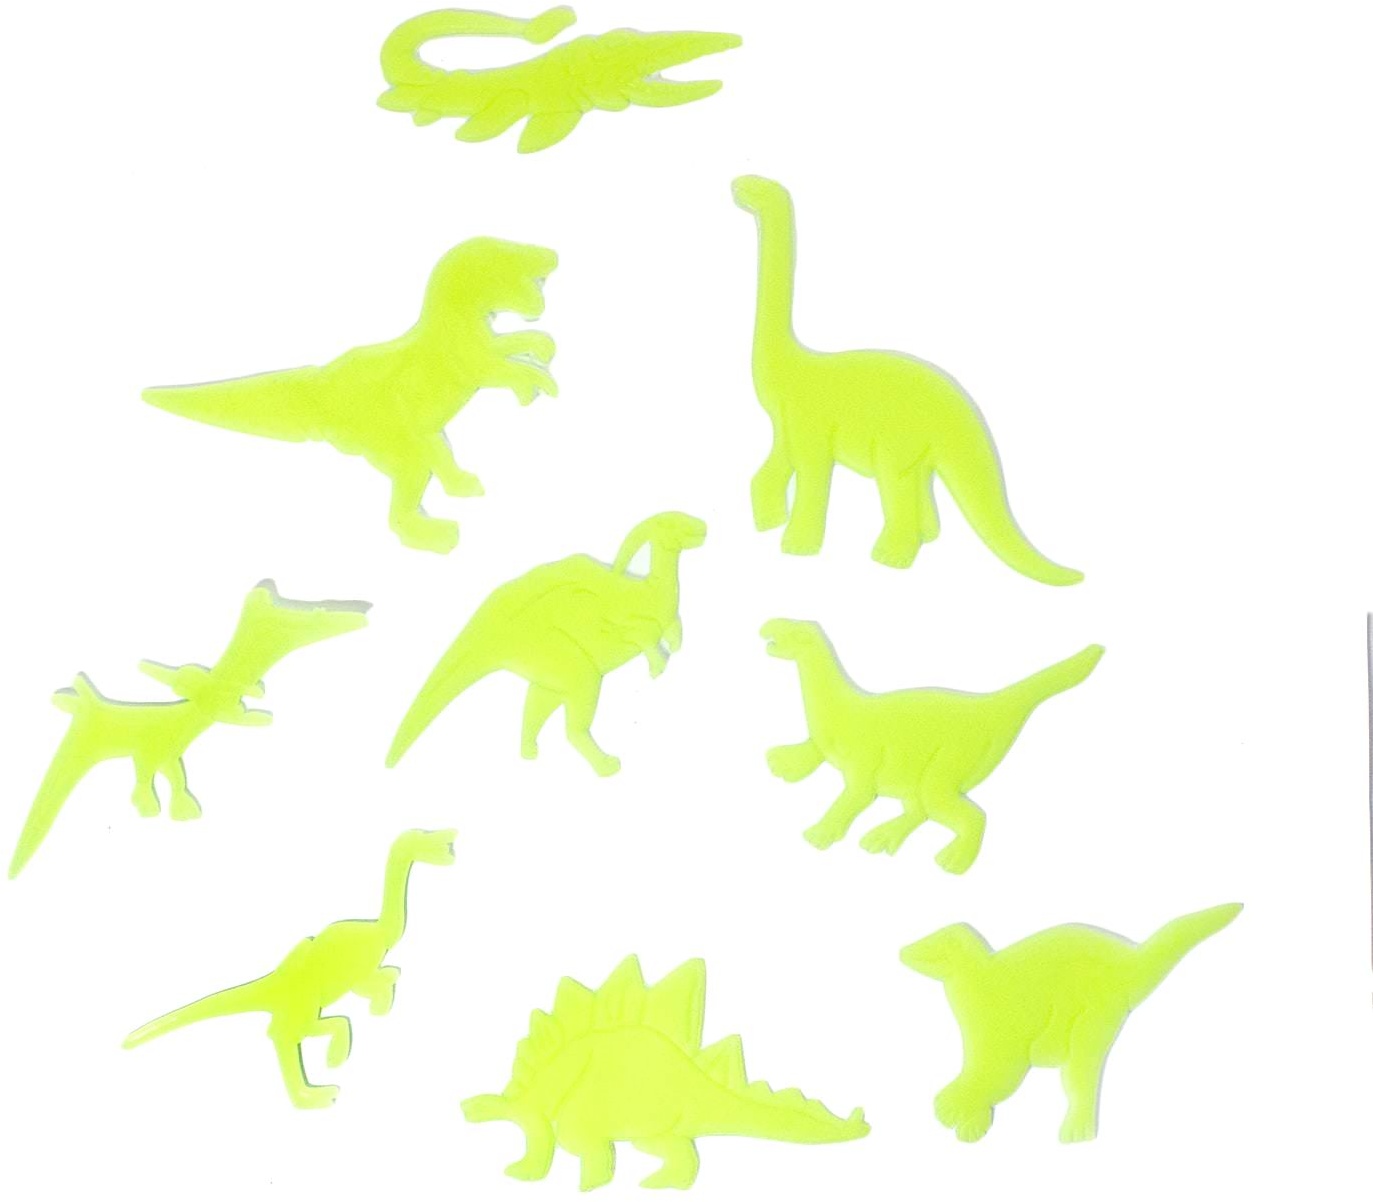 8 Leuchtdinos Sticker Dinosaurier Aufkleber leuchtend Wandsticker